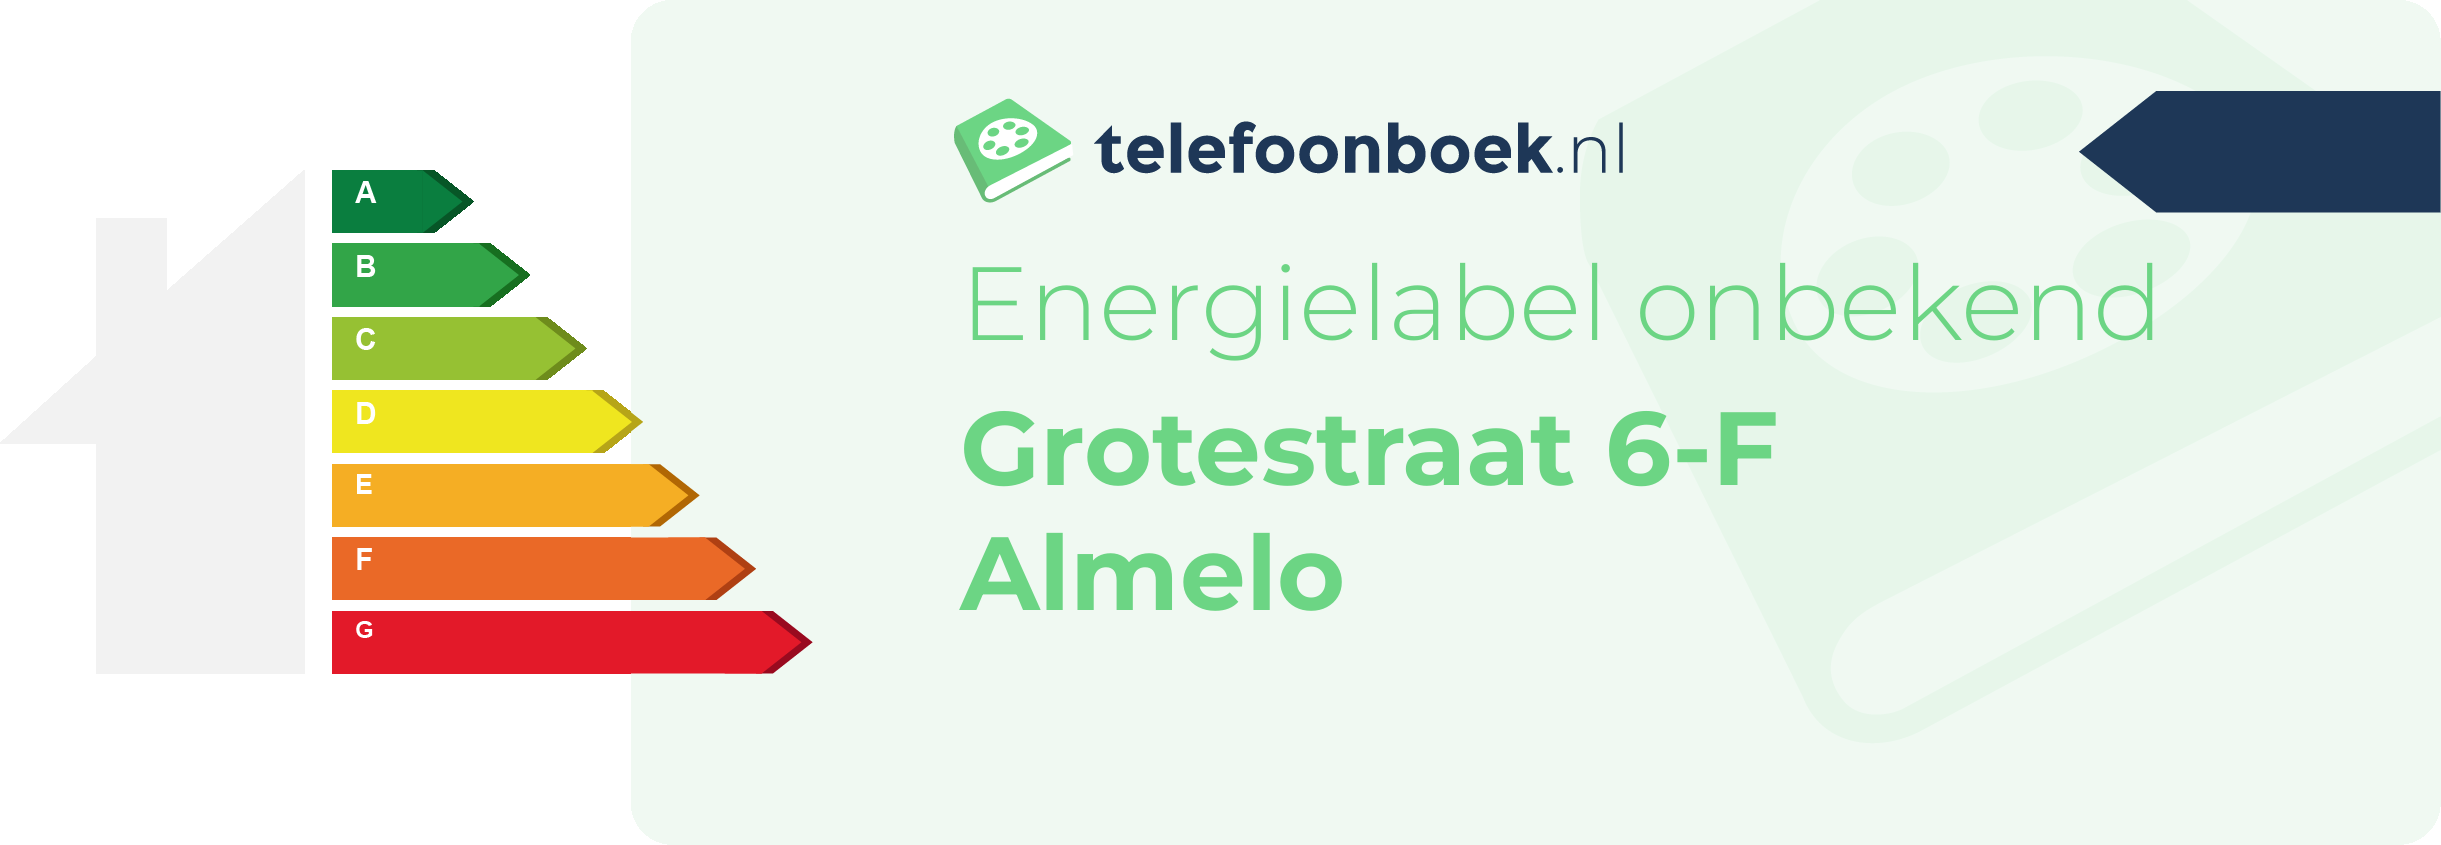 Energielabel Grotestraat 6-F Almelo